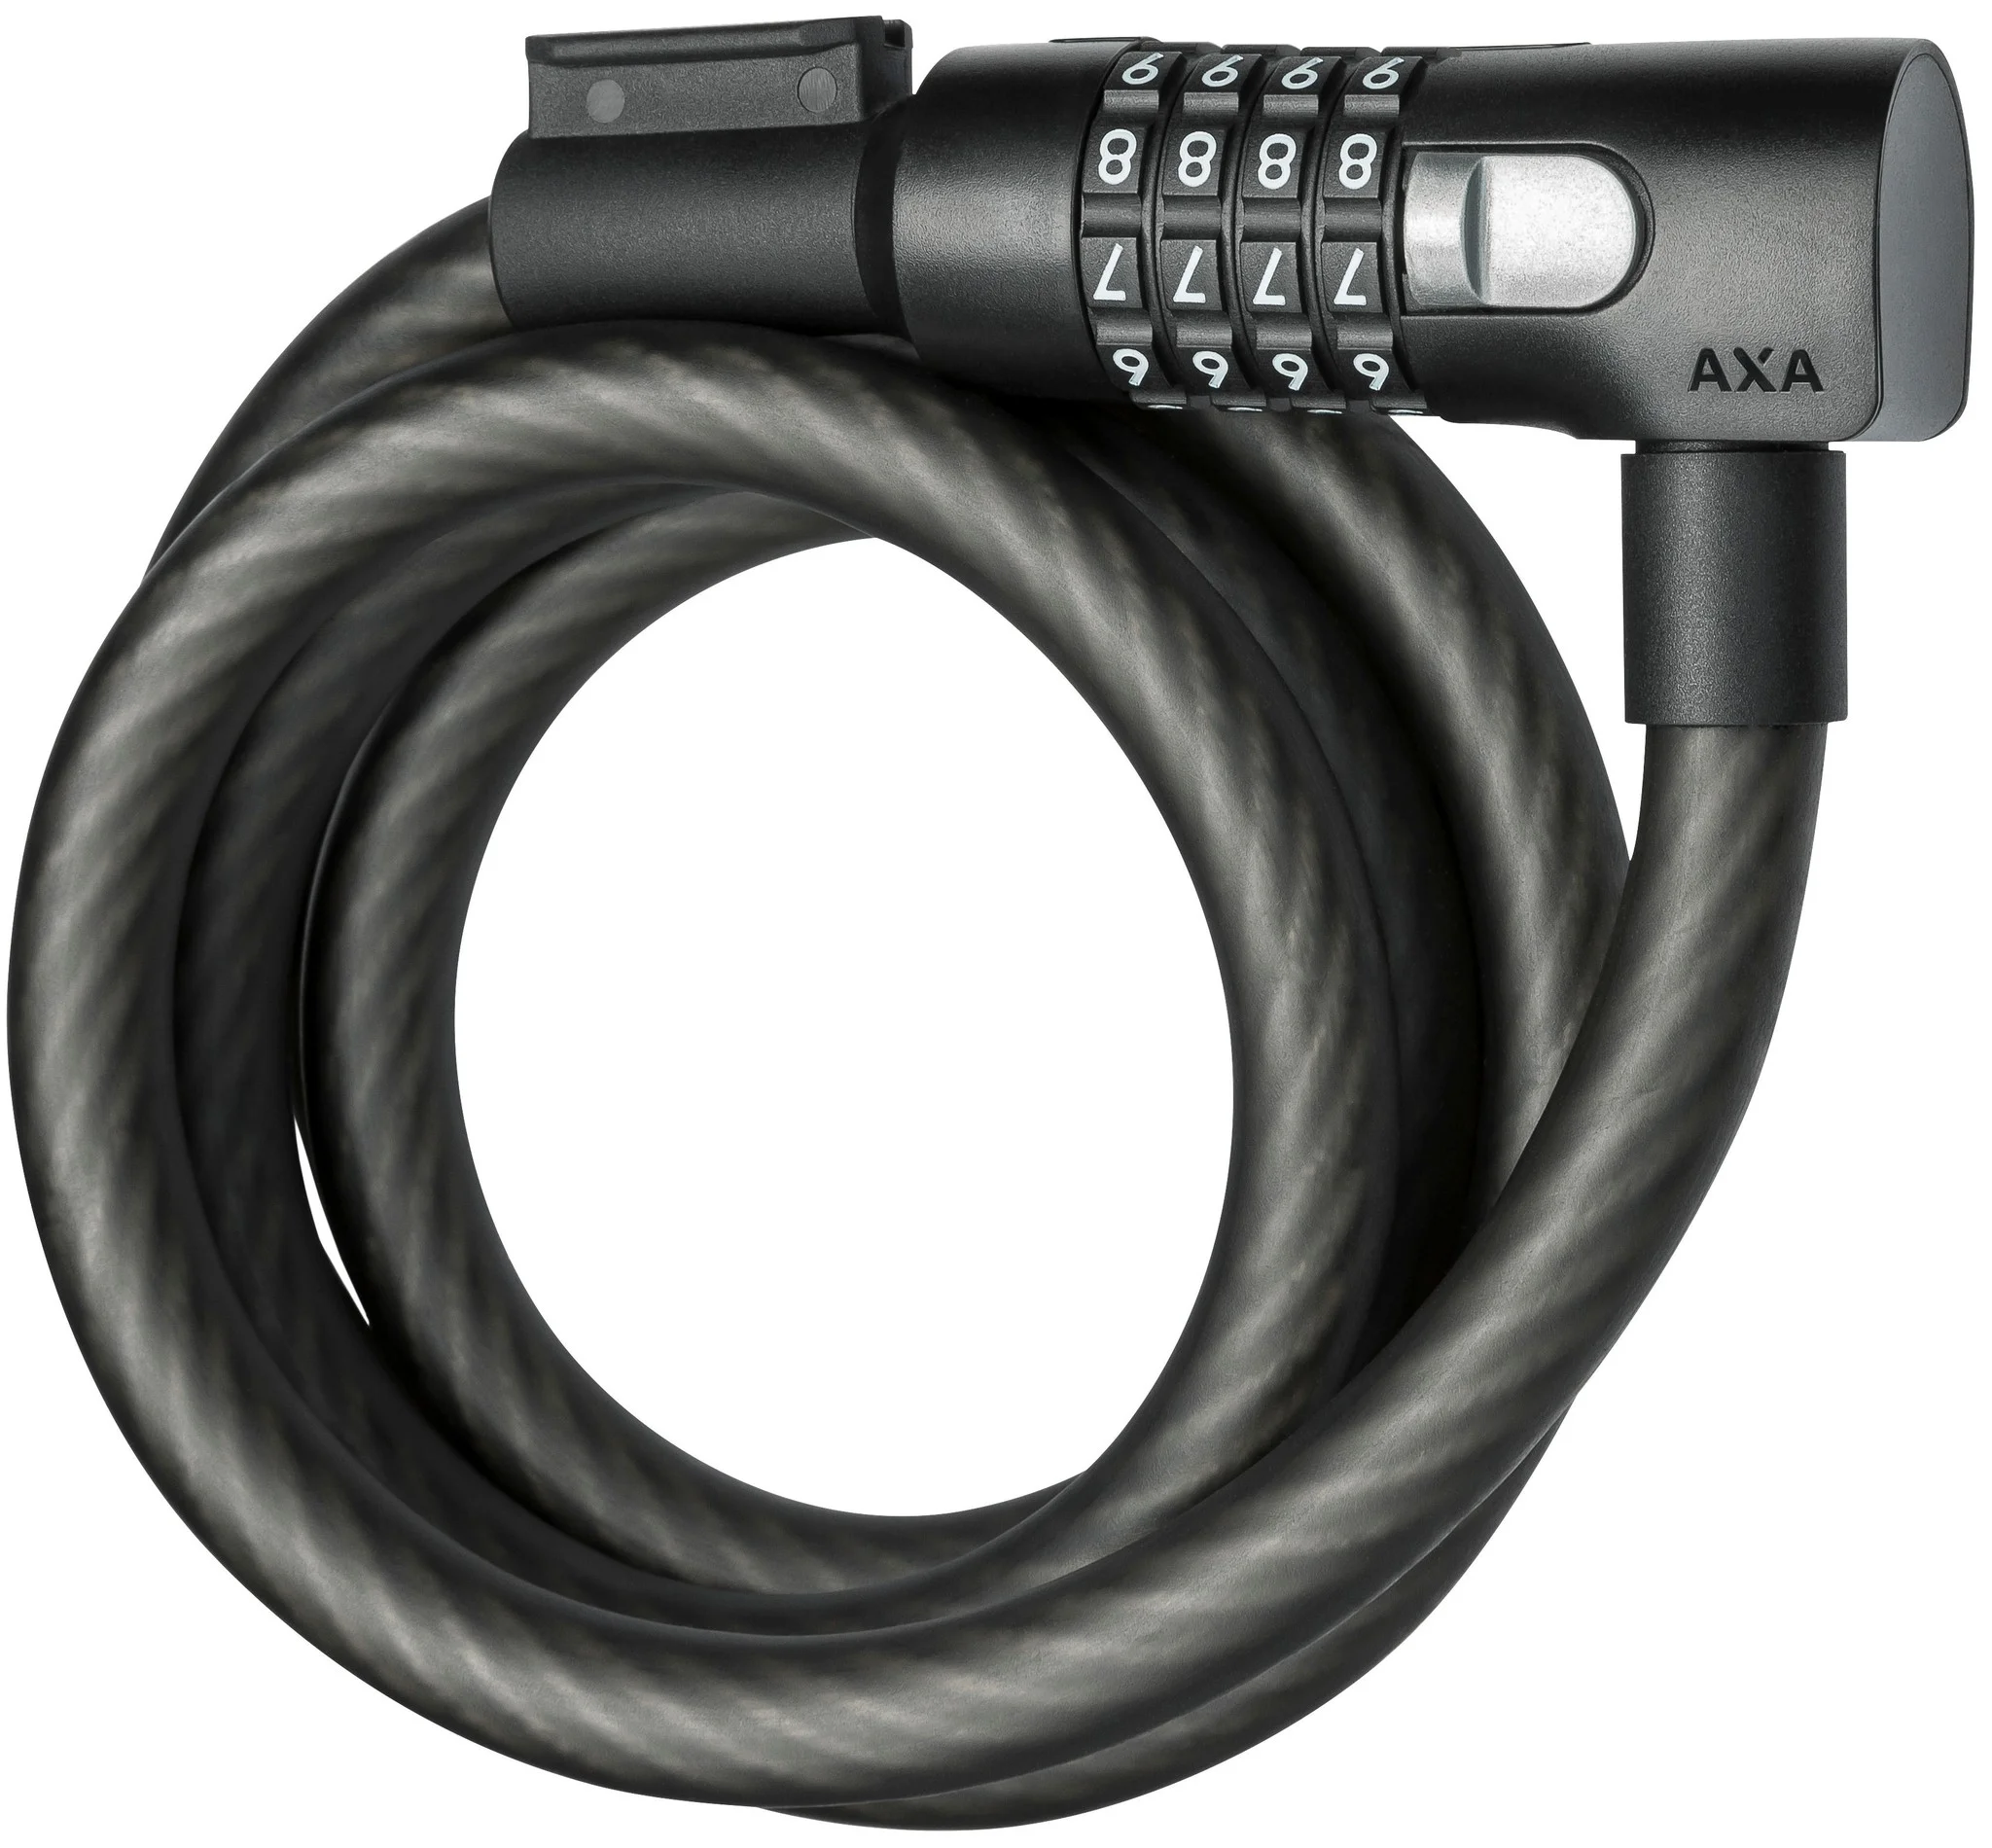 AXA kabelslot Resolute C15 180 Ø15 mm-1800 mm zwart